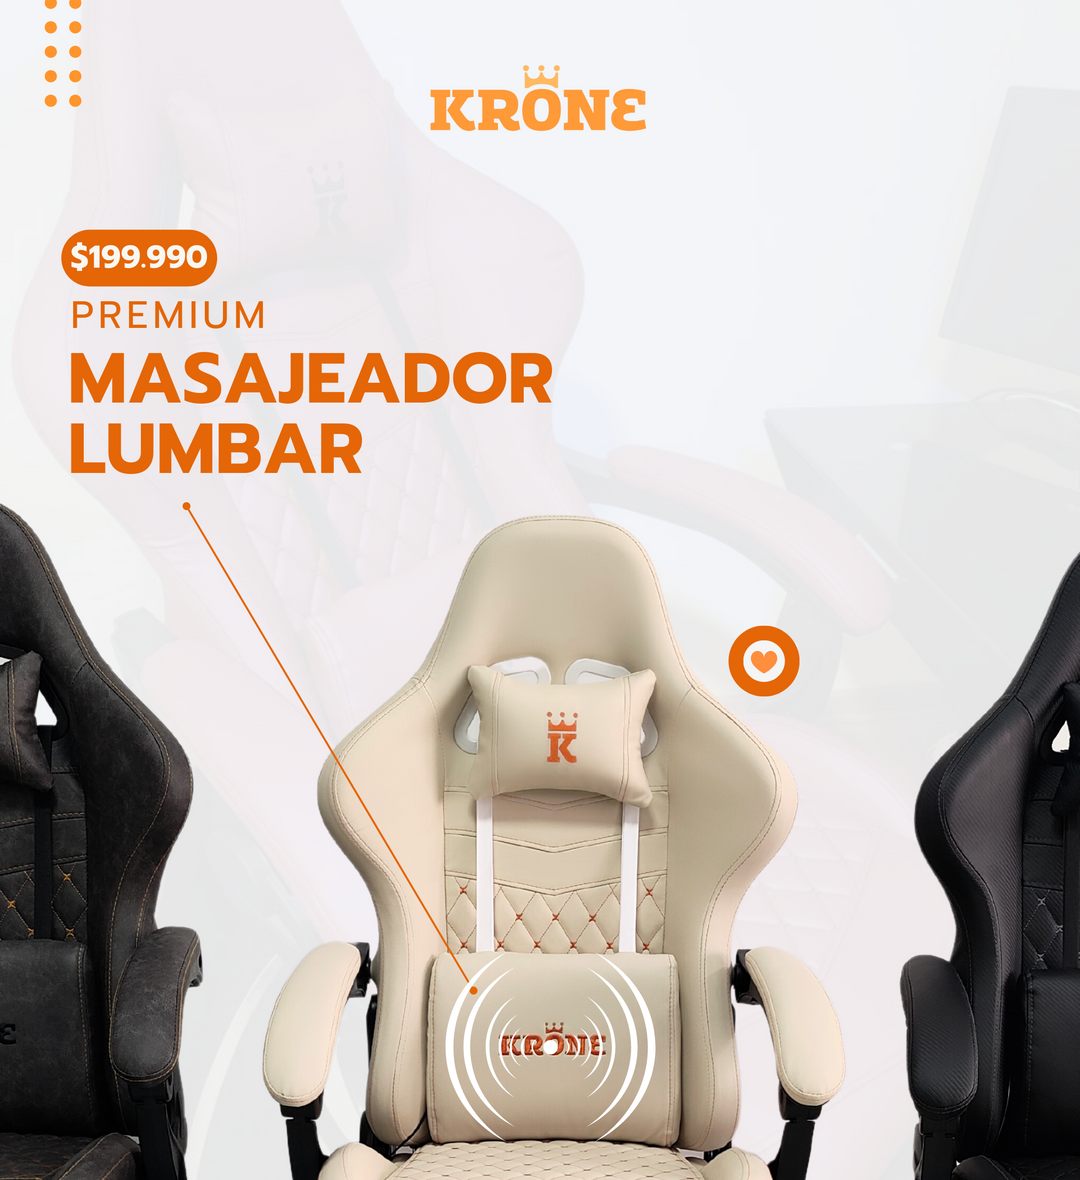 ¿Cuáles son los beneficios de las sillas Krone?